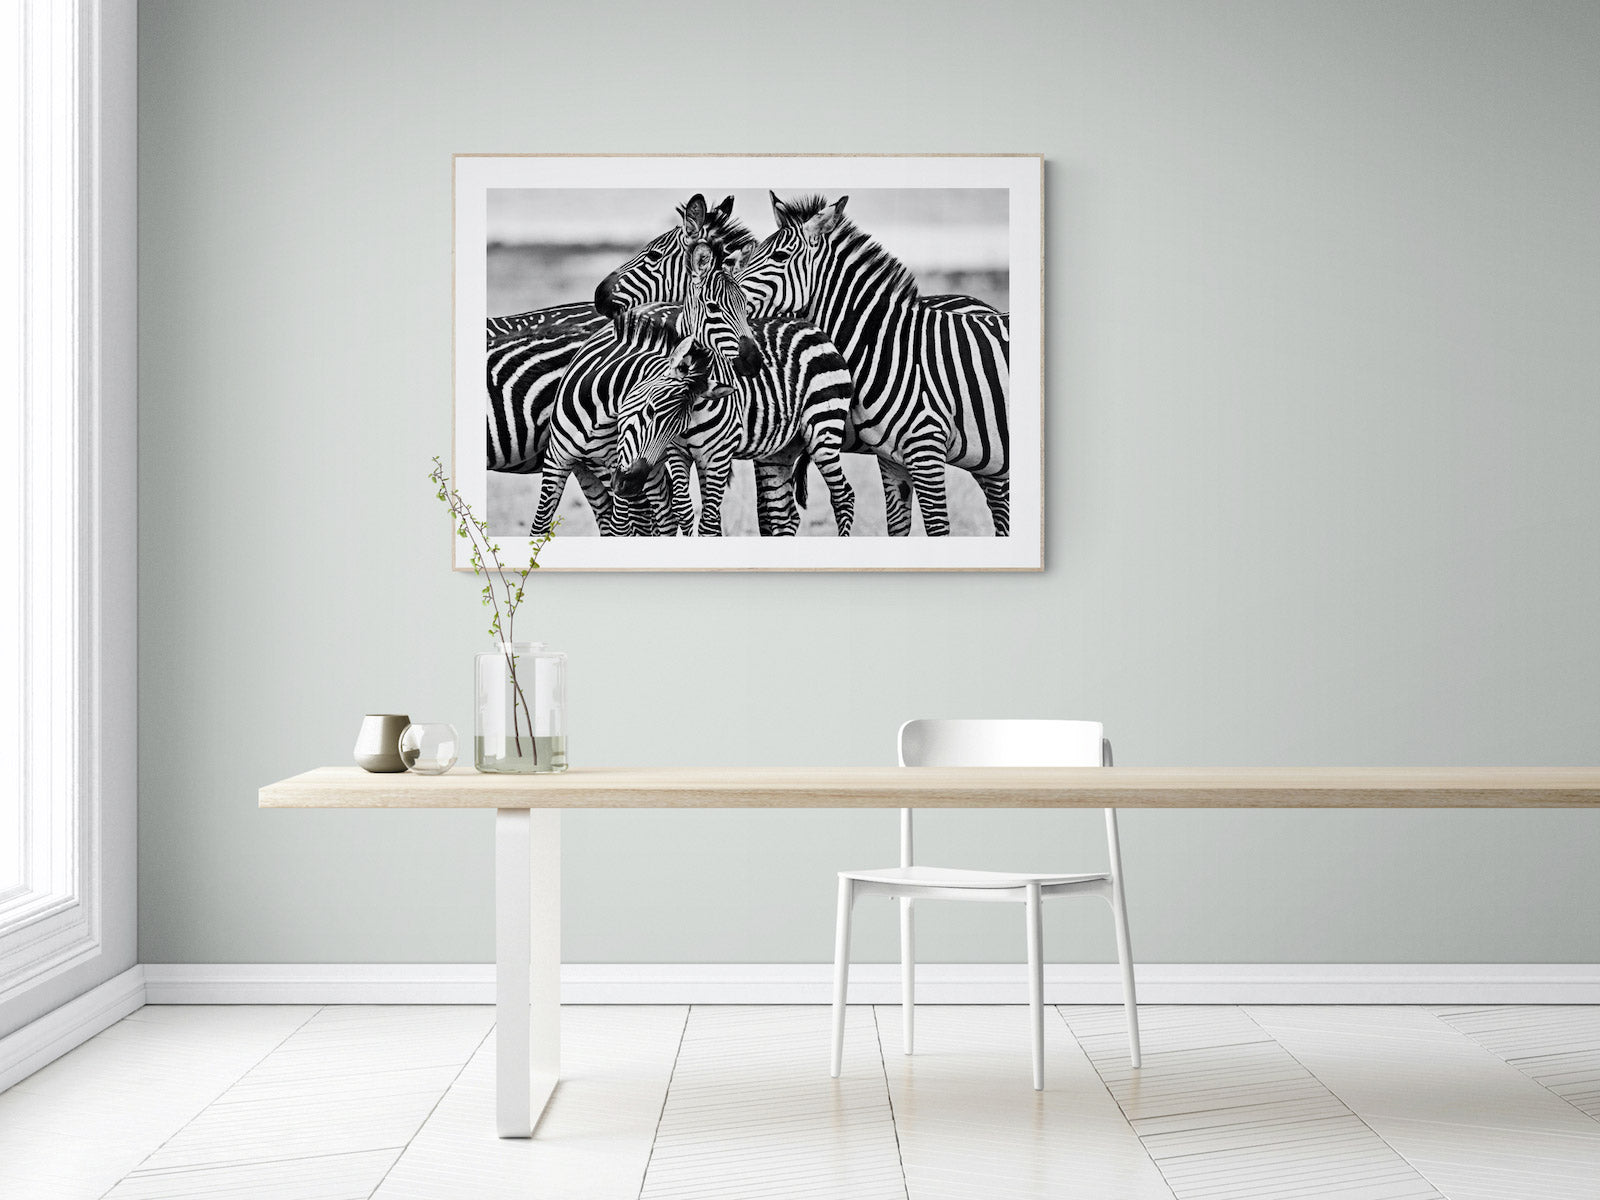 Zebra by National Geographic Photographer Jason Edwards